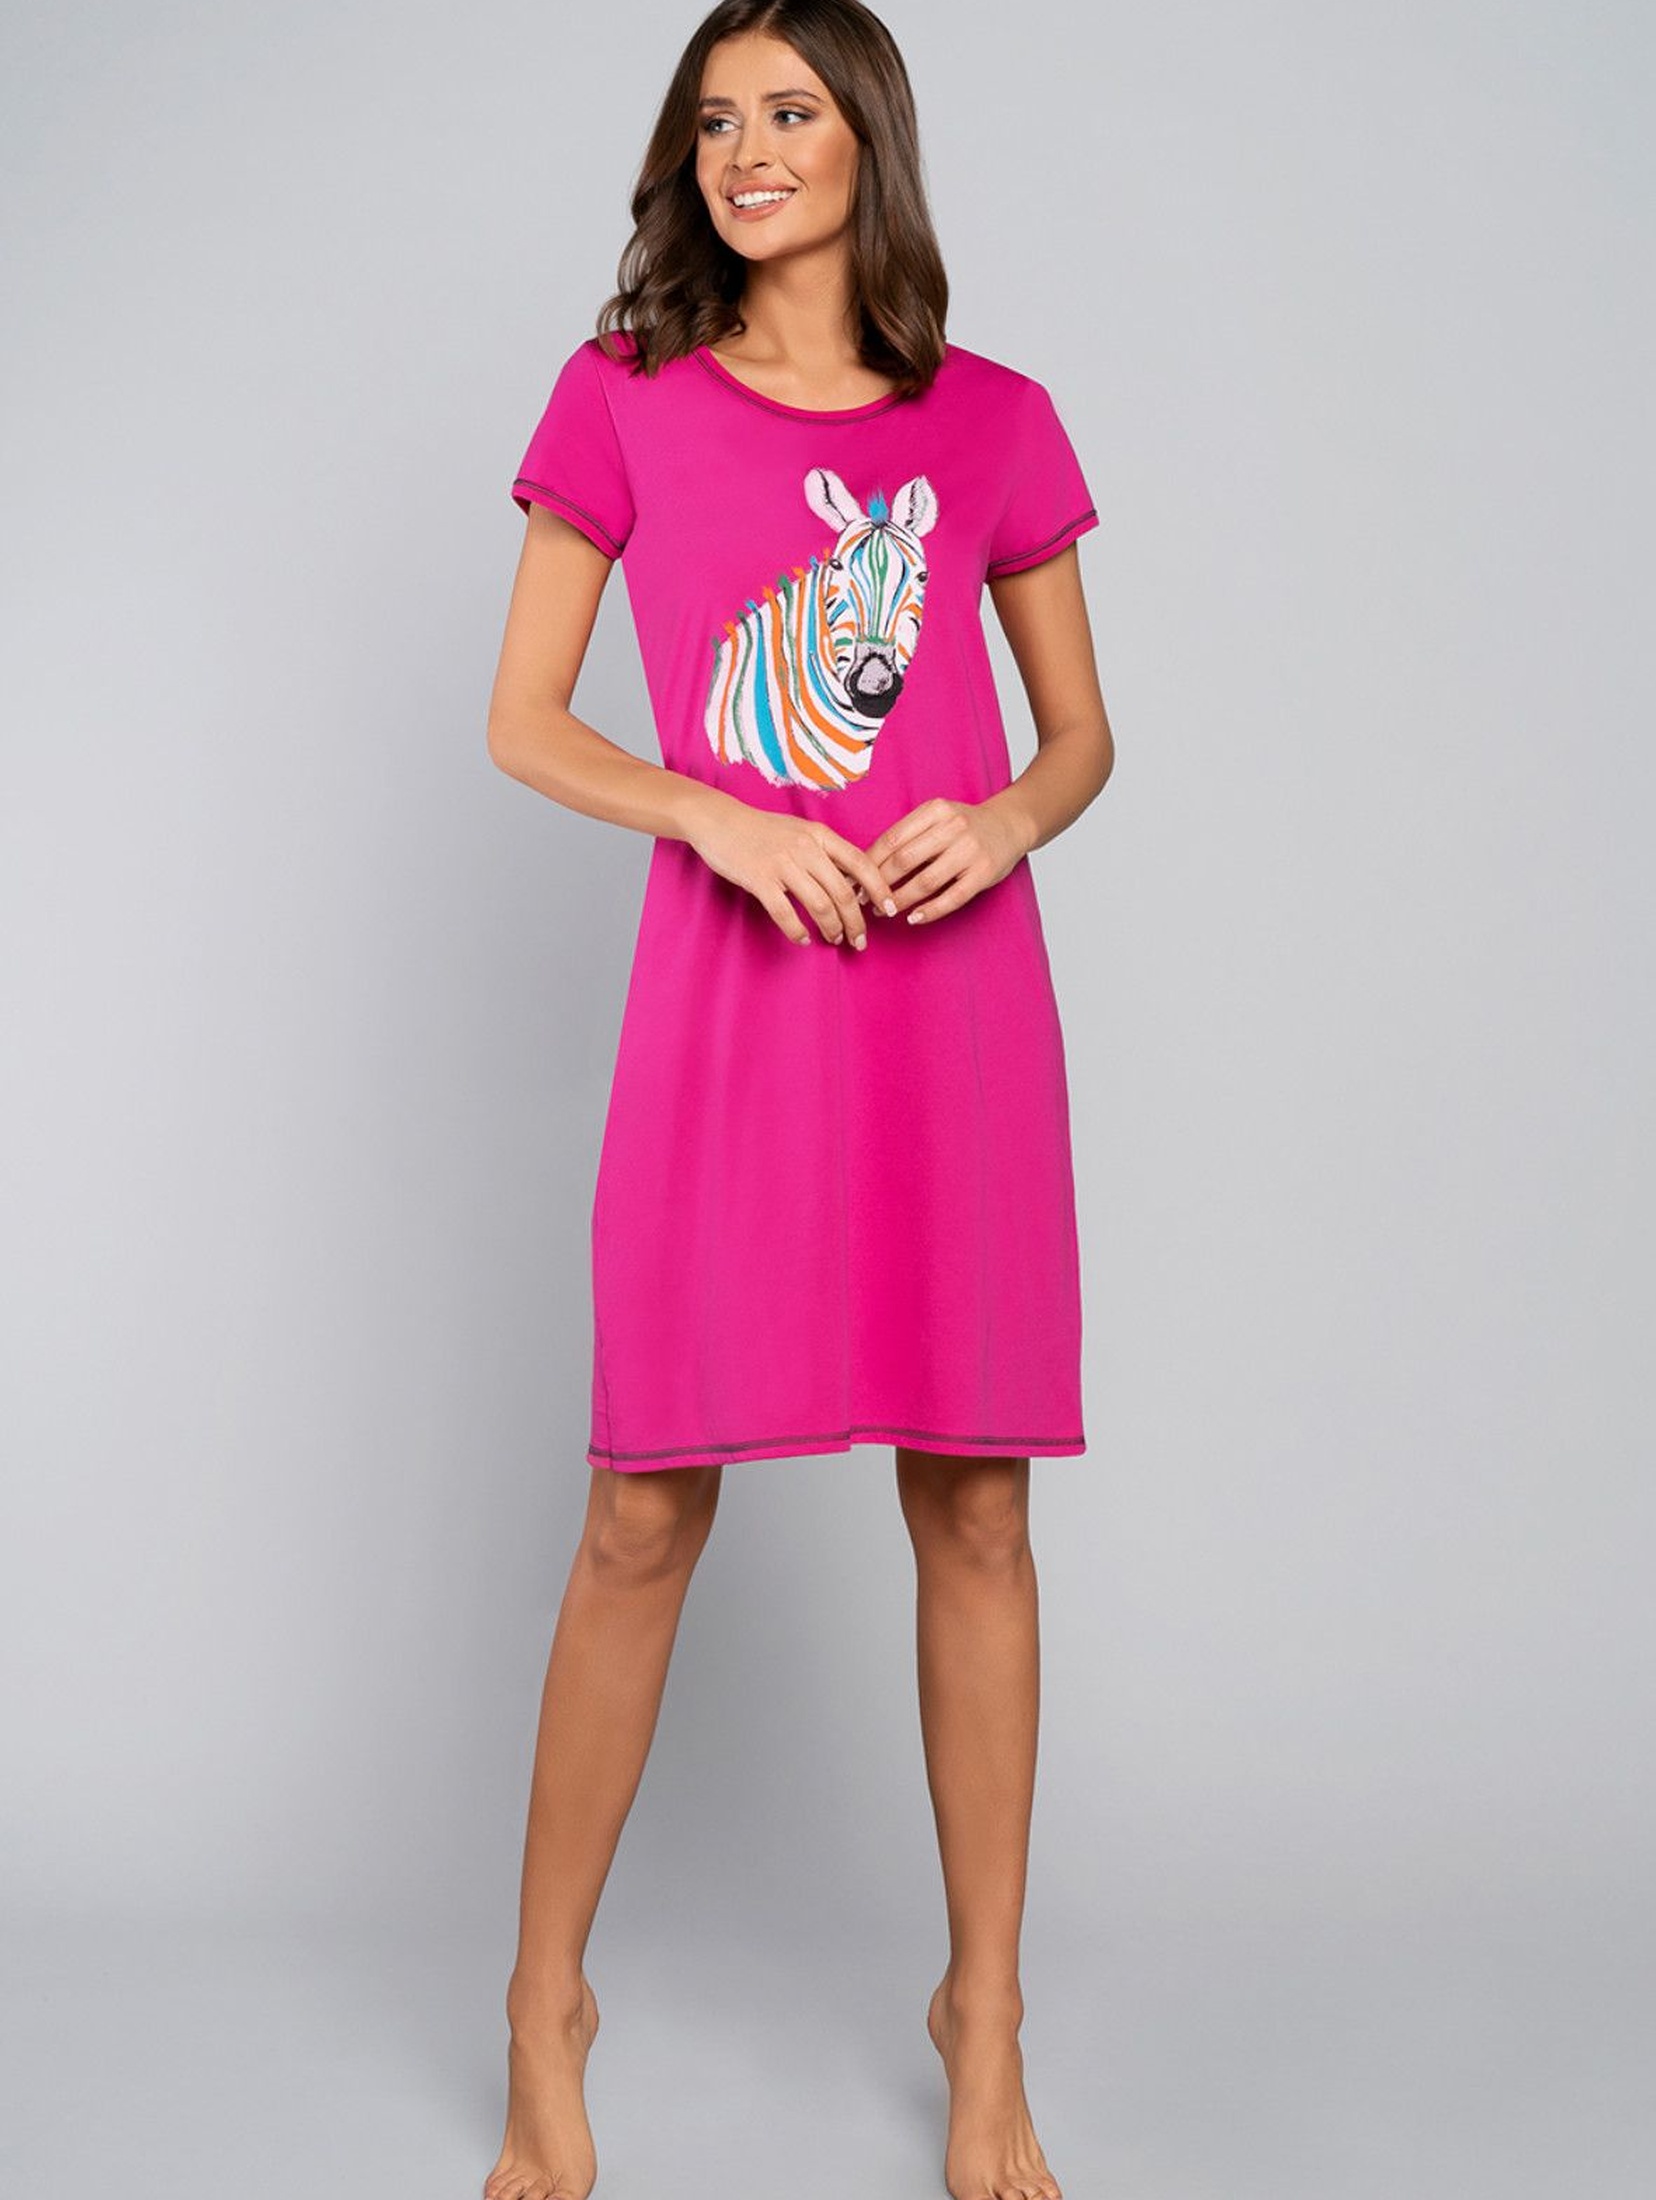 Bawełniana koszula nocna damska z zebrą - różowa